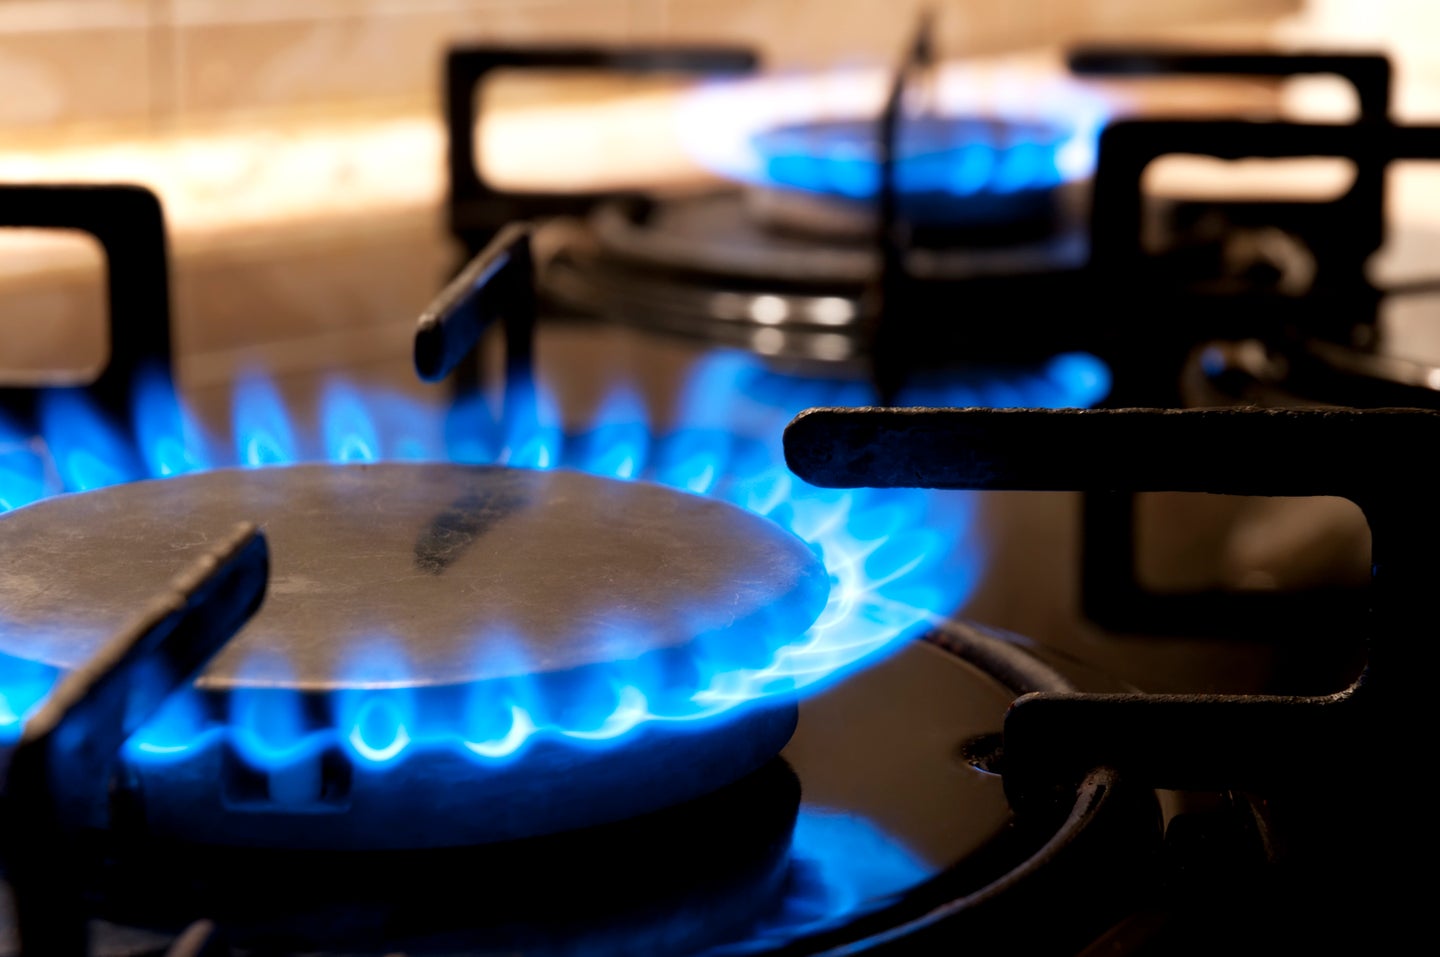 lit gas stove